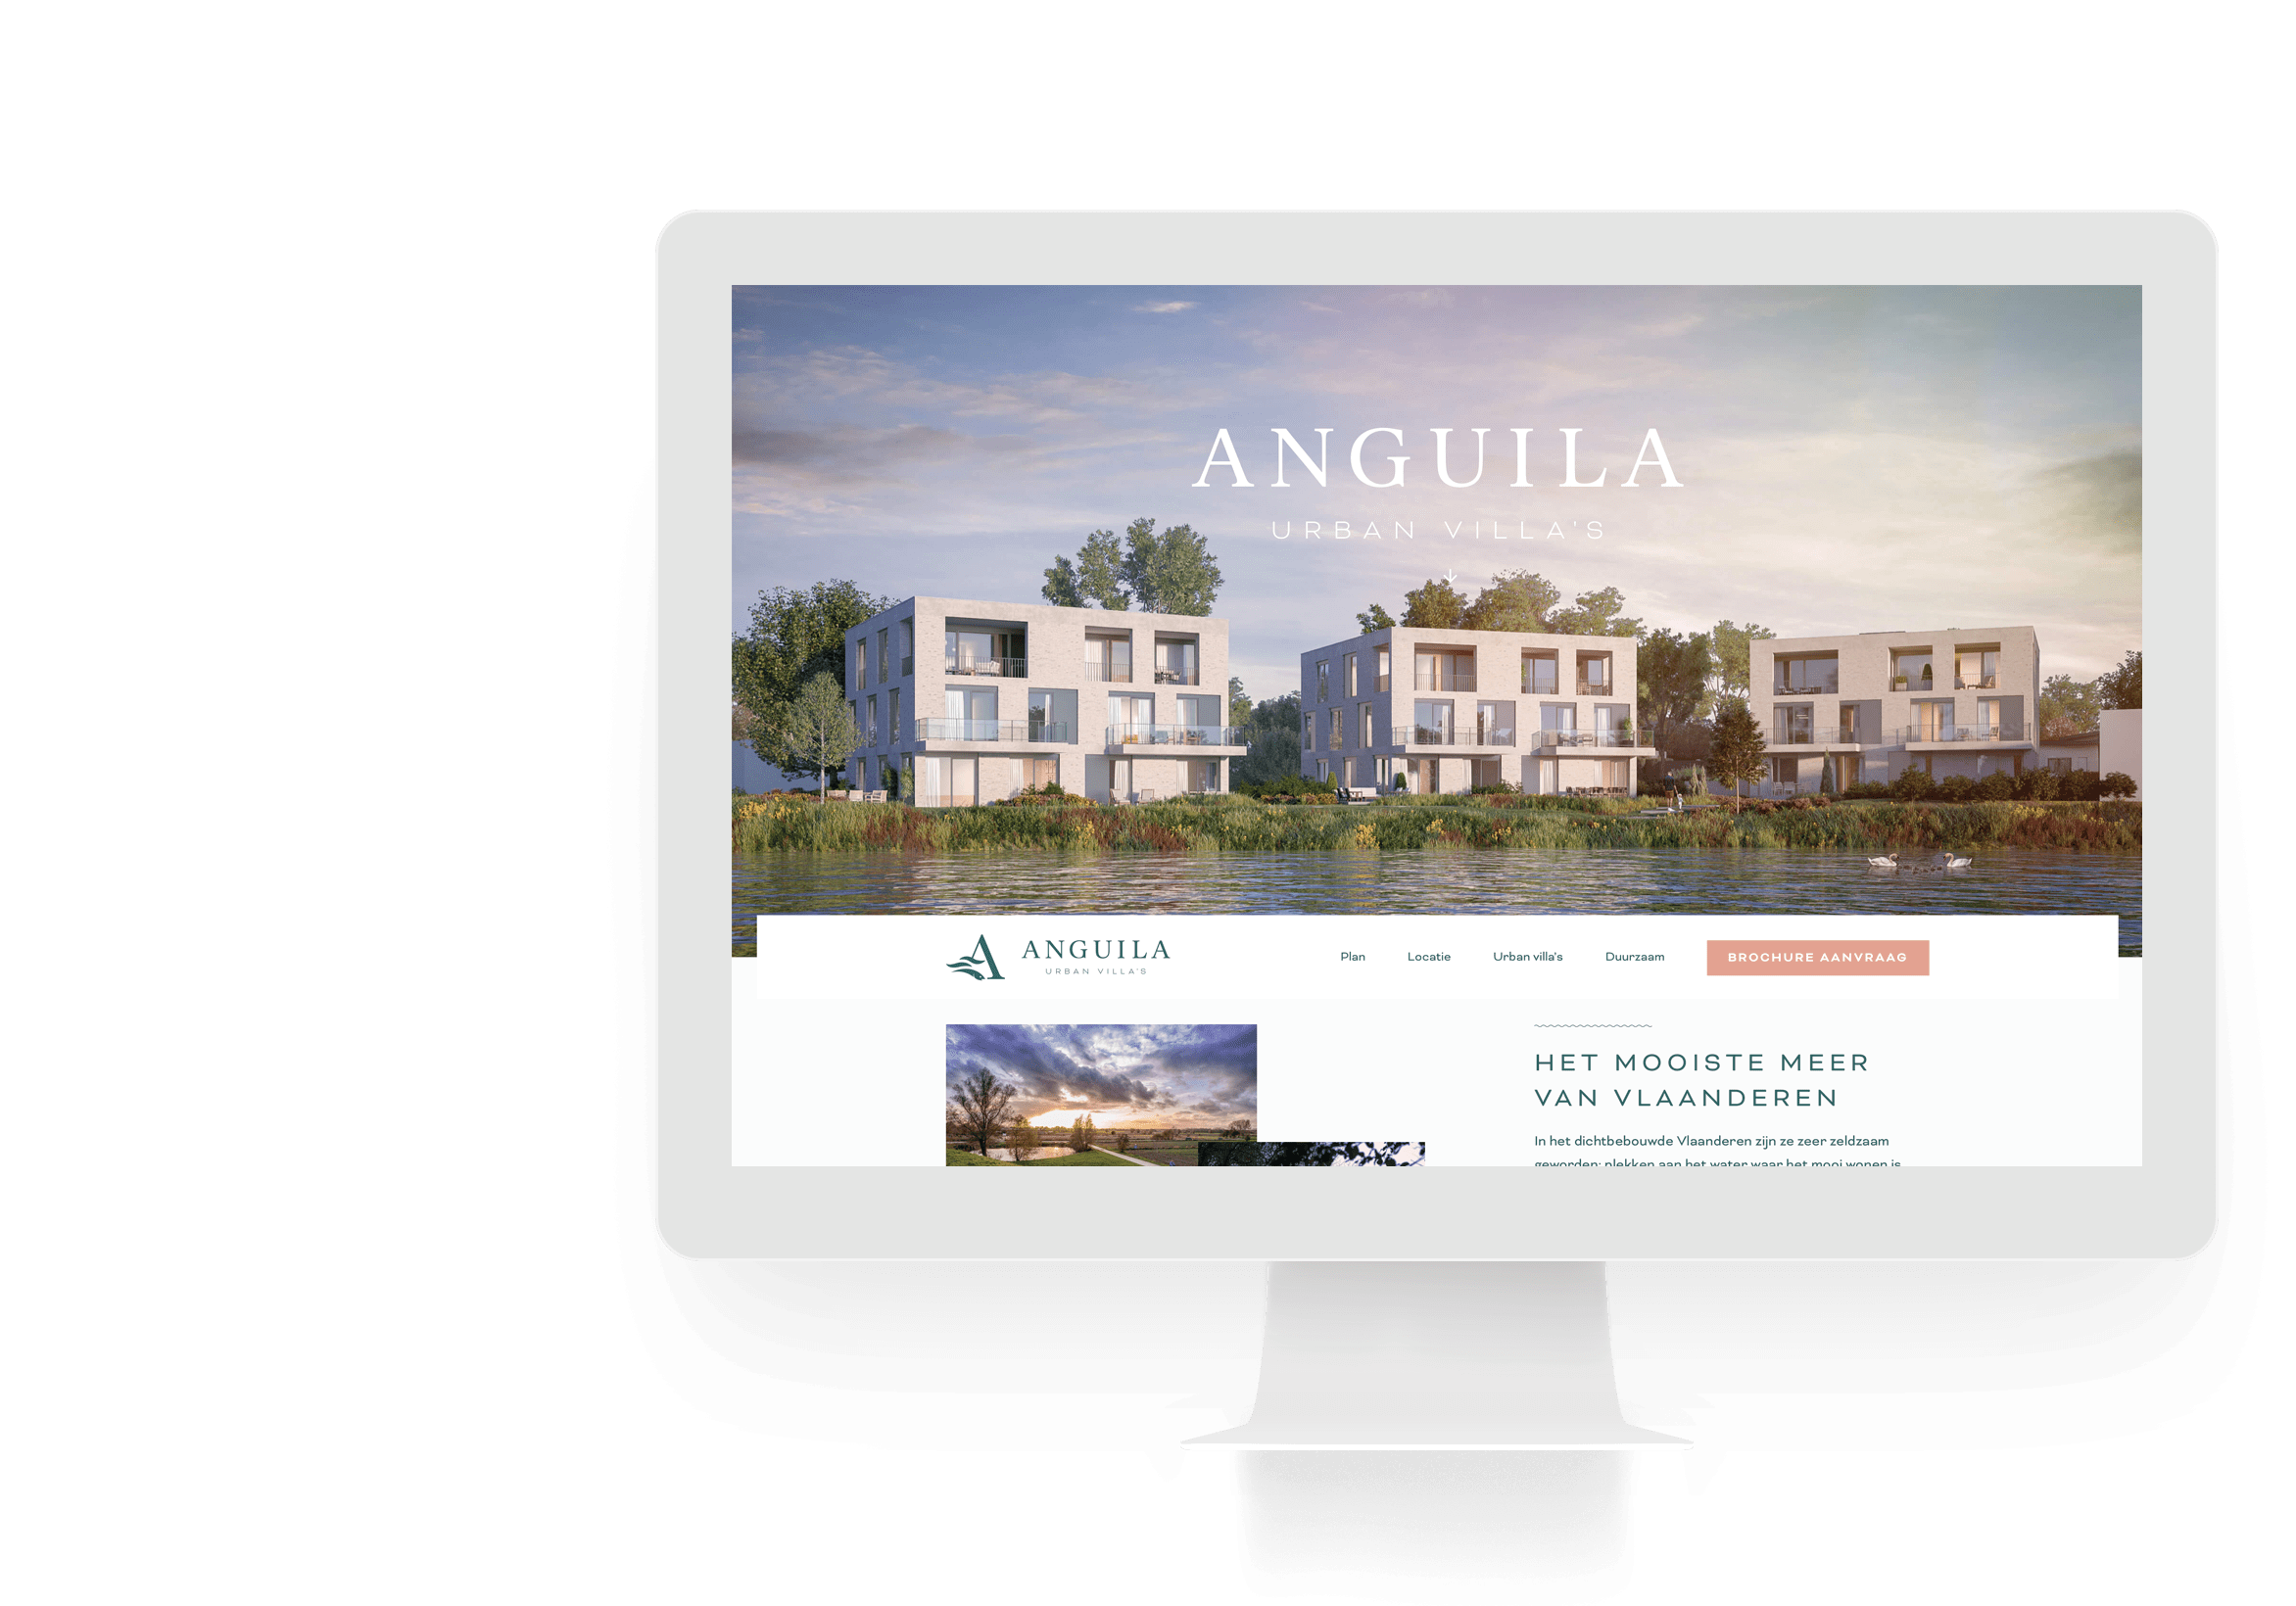  Een iMac met de website van Anguila